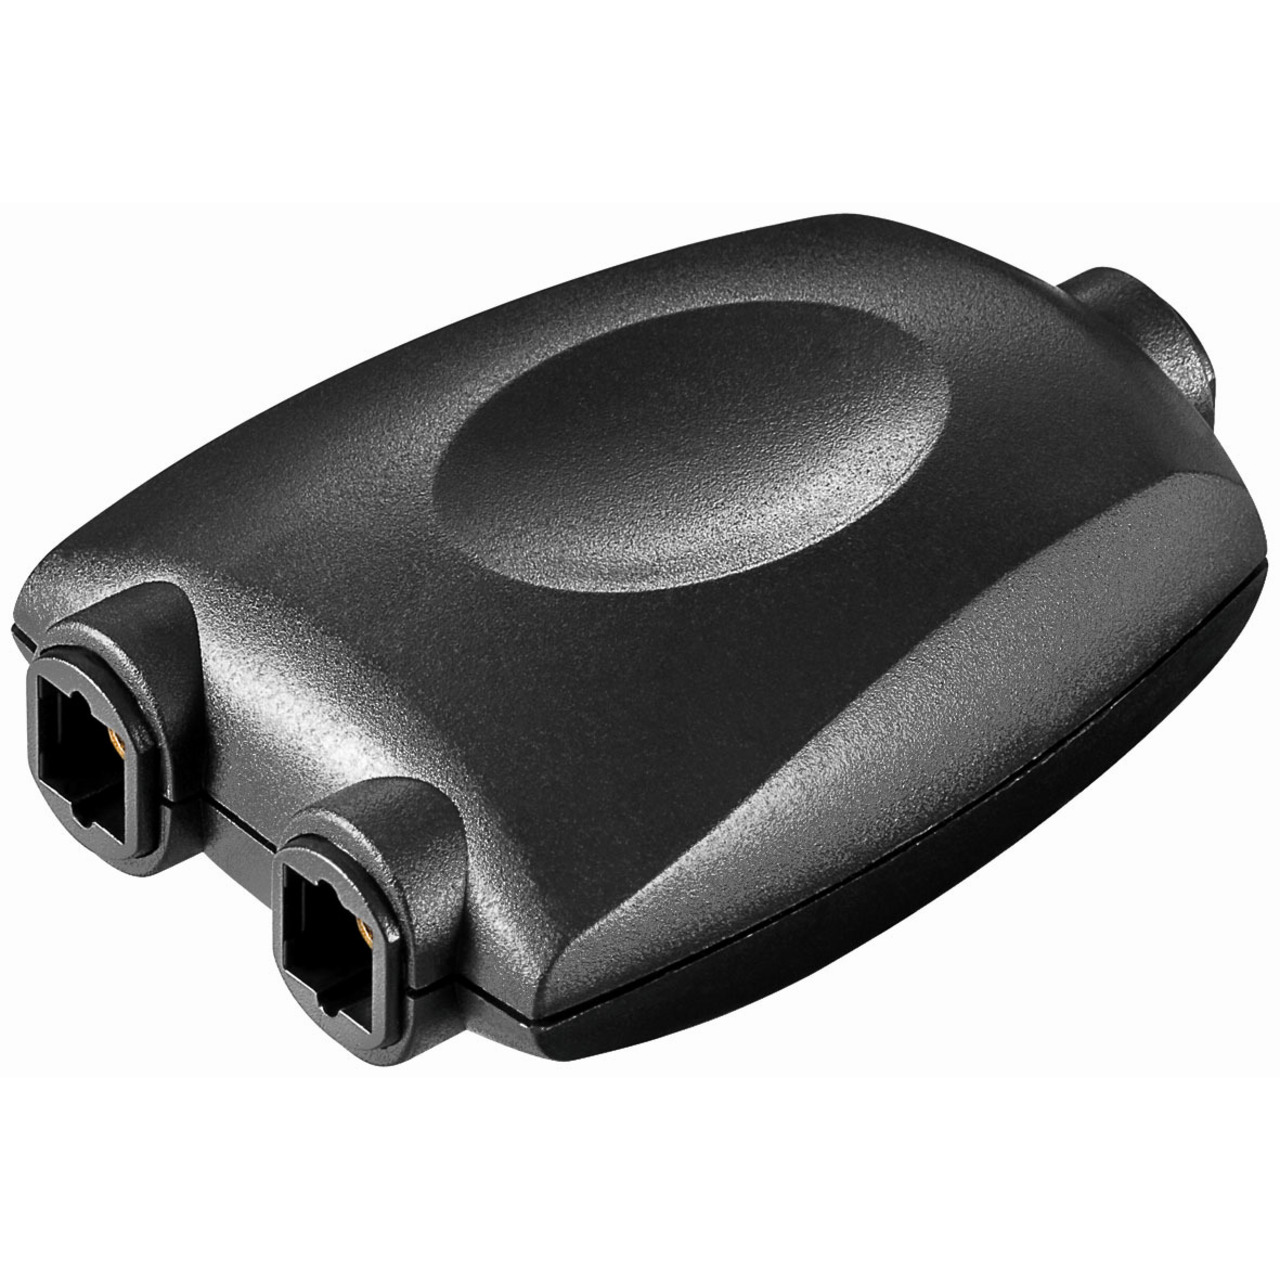 Audio-Adapter mit 2x Toslinkkupplung